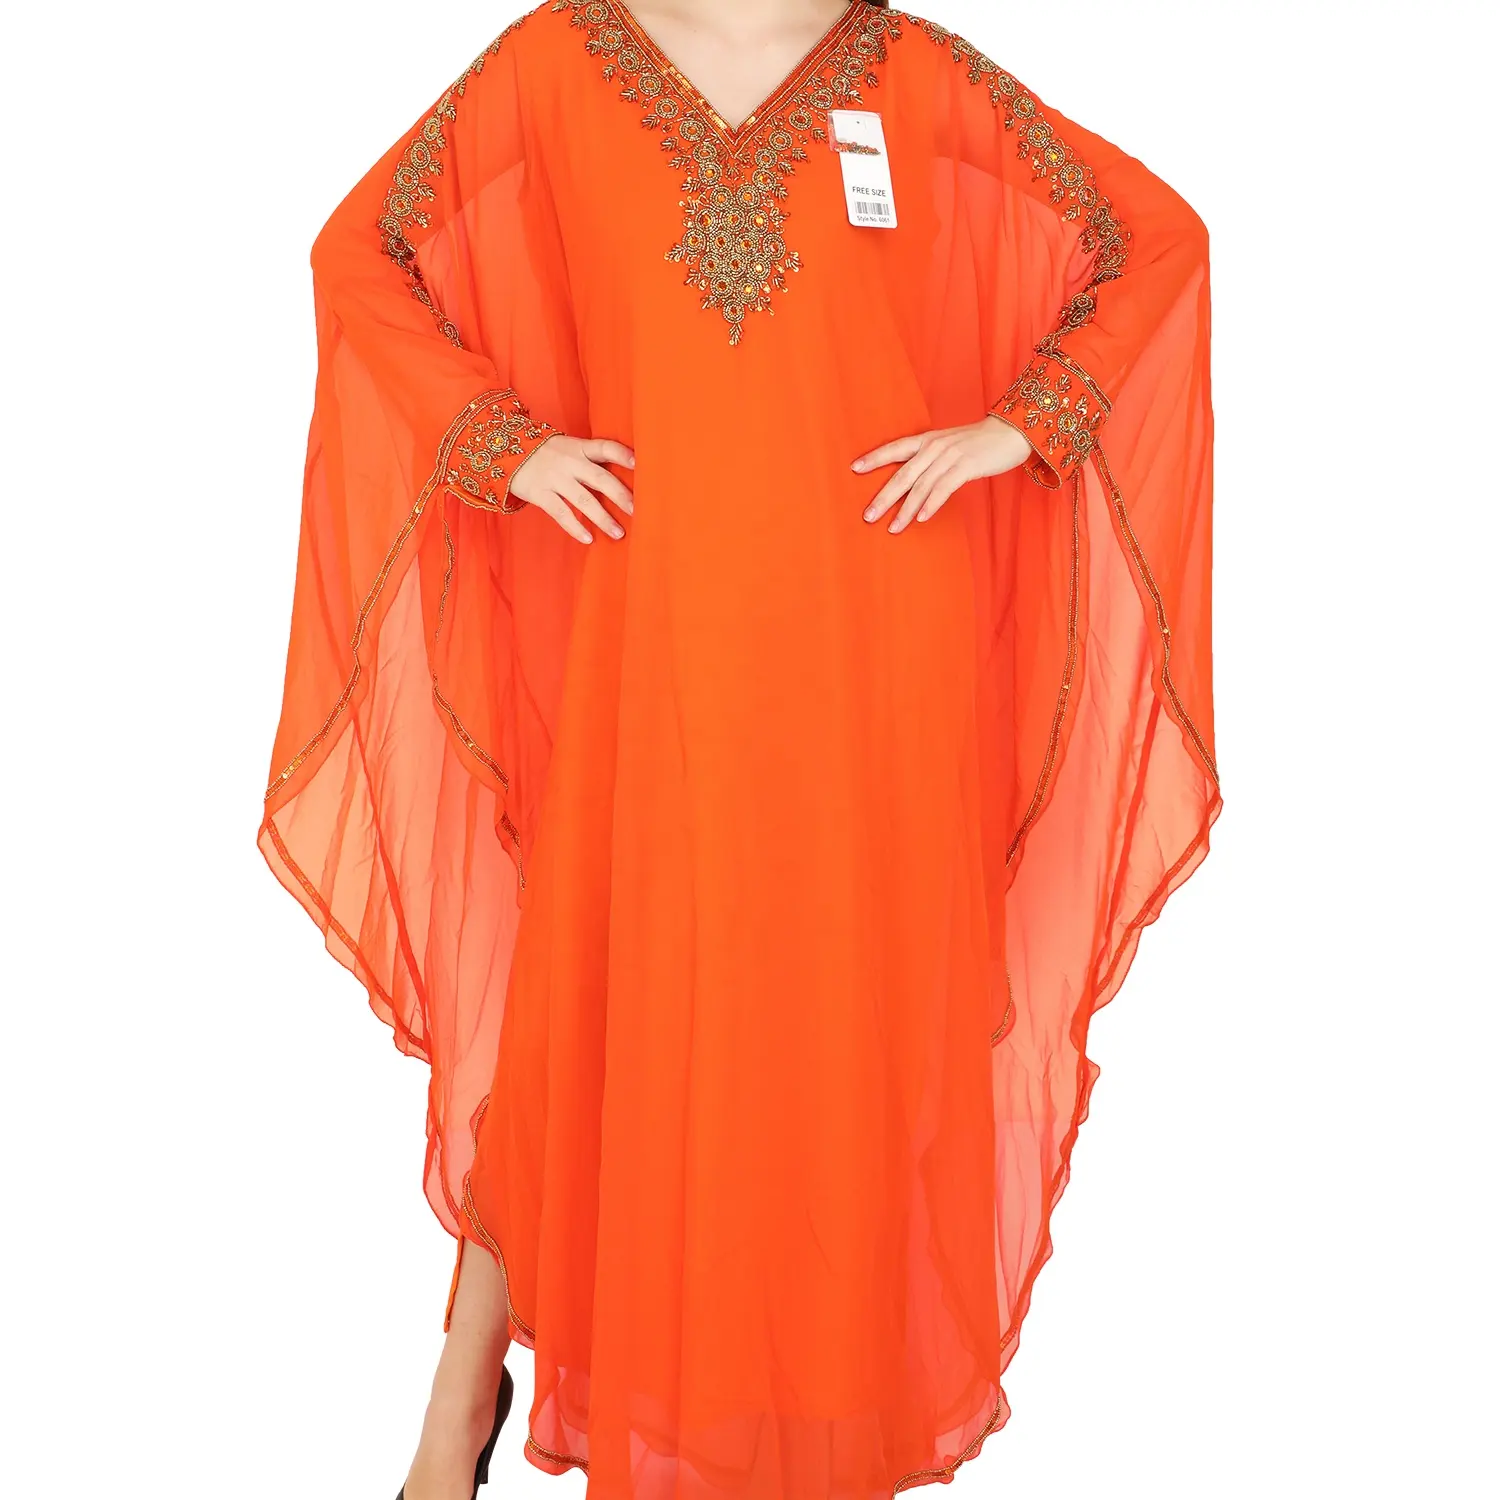 Nuovi modelli alla moda DUBAI abito in stile marocchino abito da festa FARASHA ABAYA caftano caftano per le donne servizio OEM naturale completo